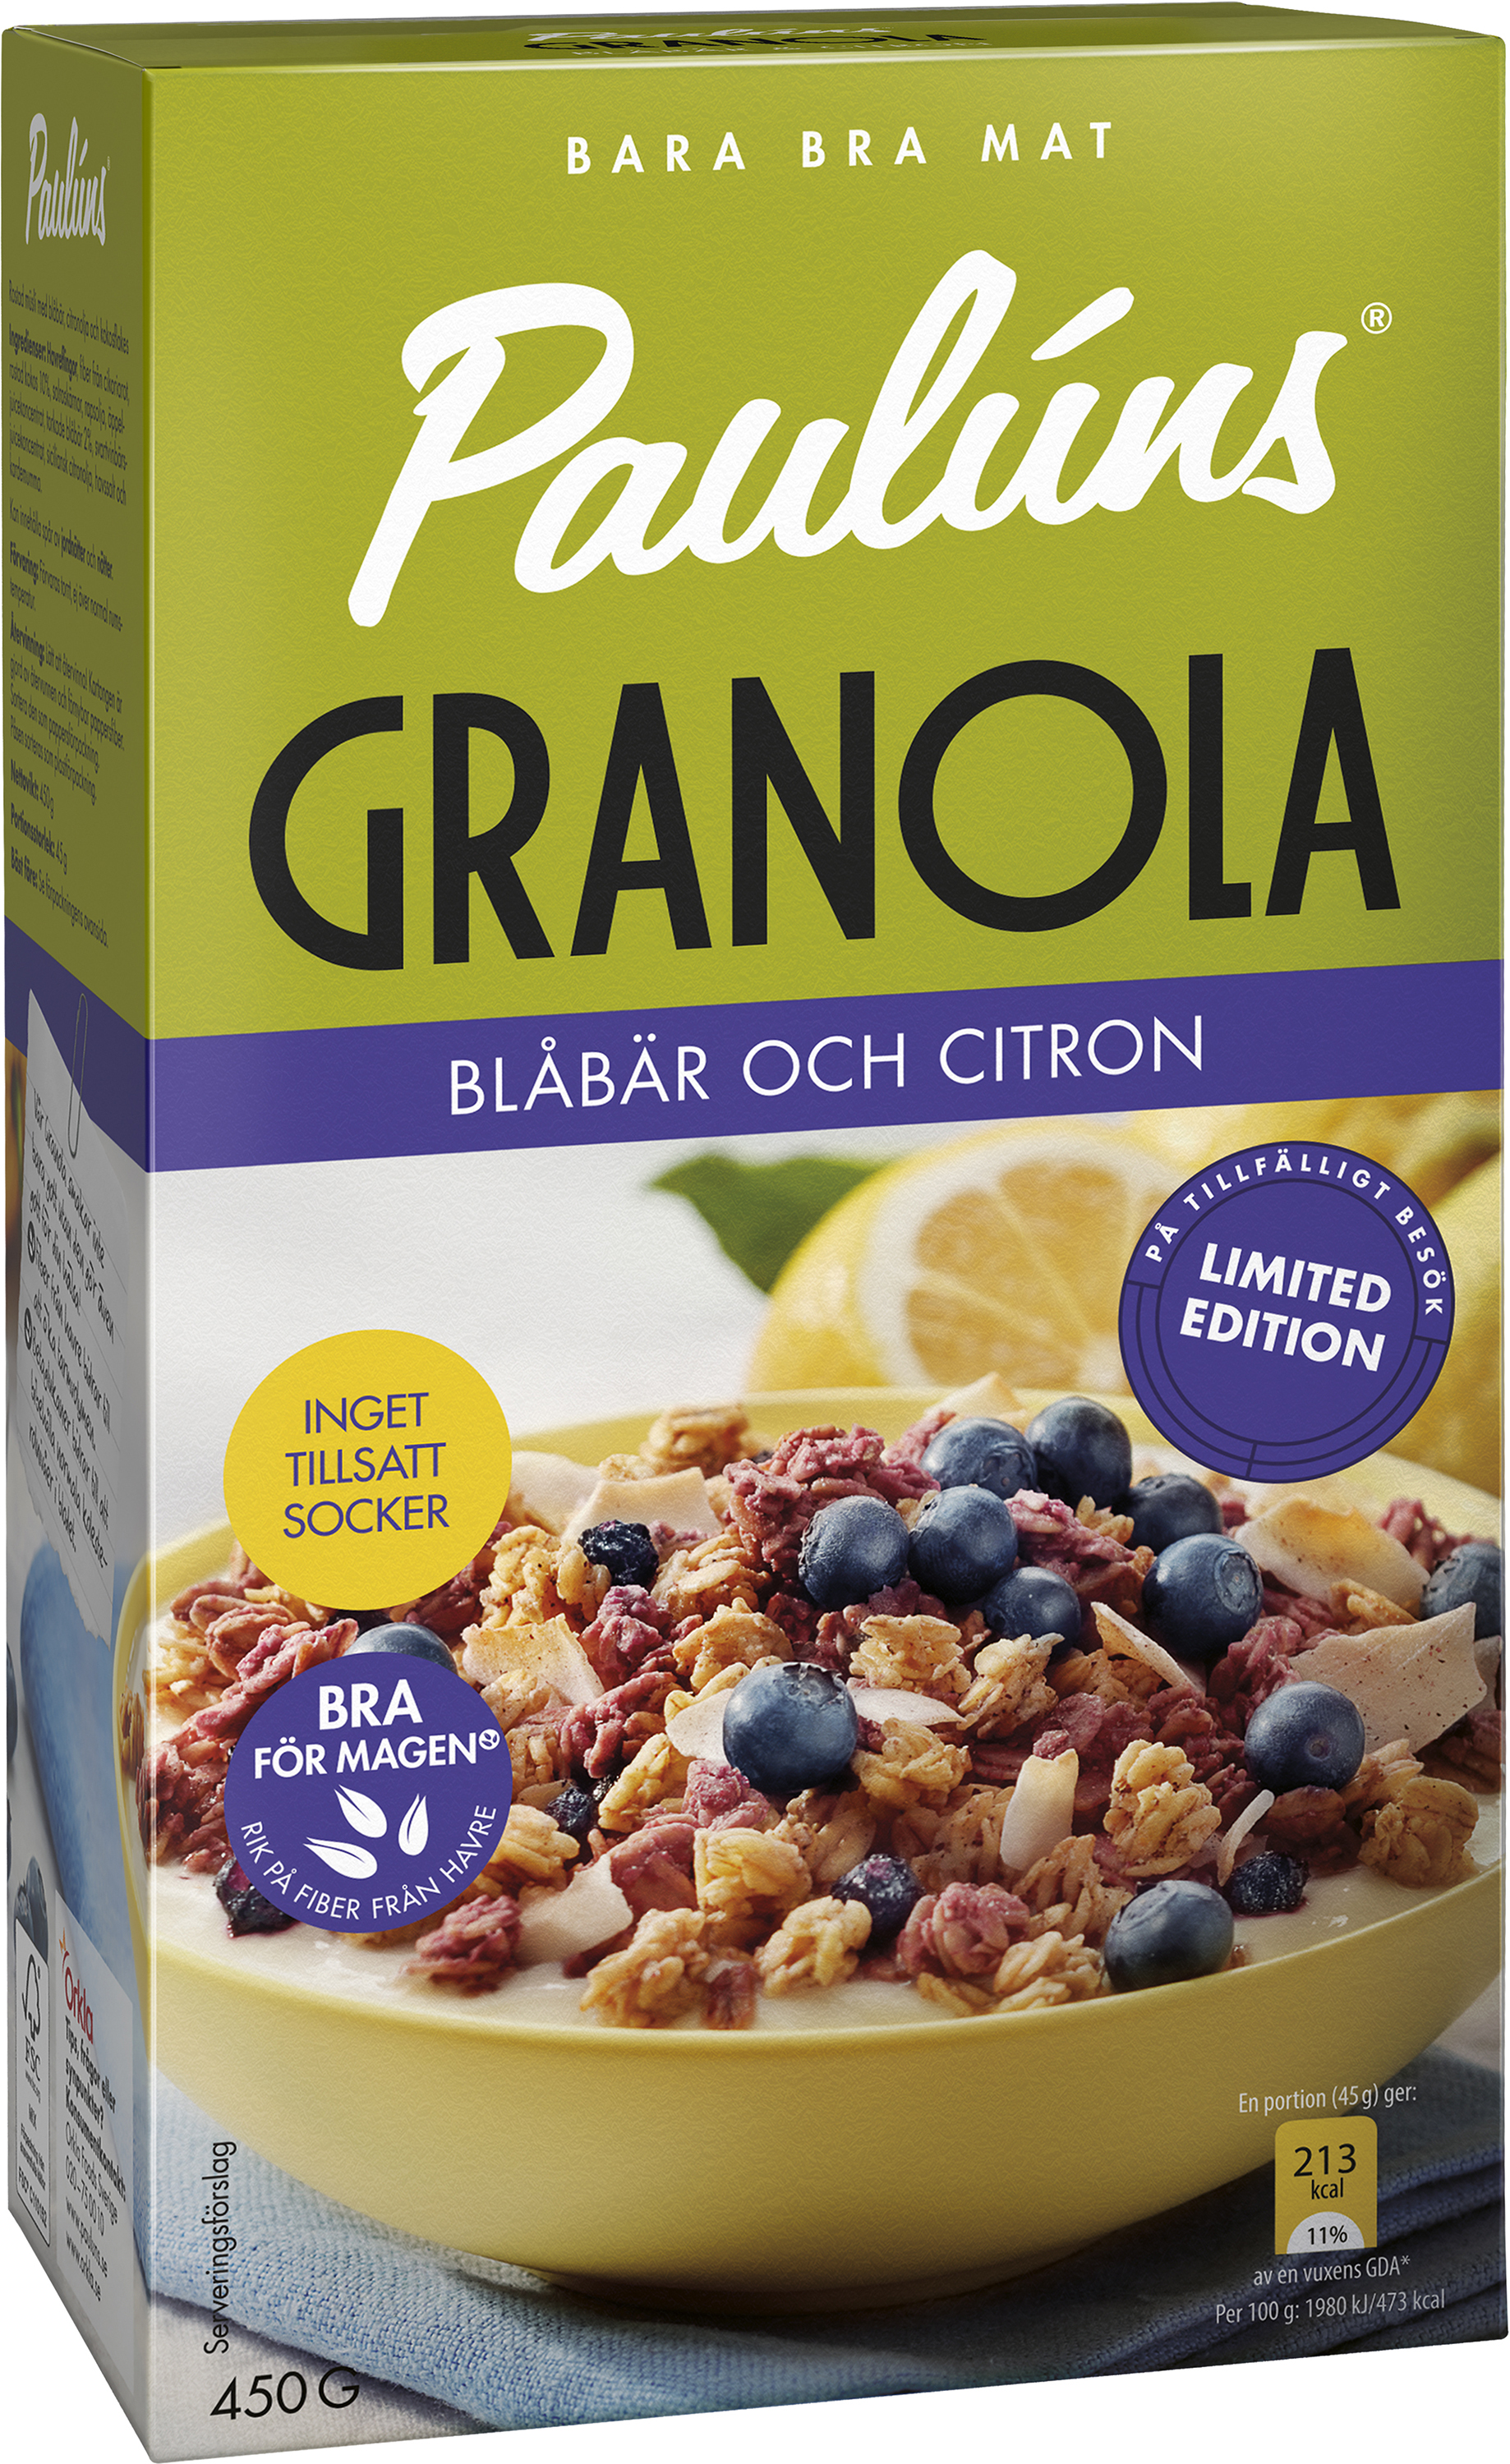 Paulúns Granola Blåbär & Citron 450 g